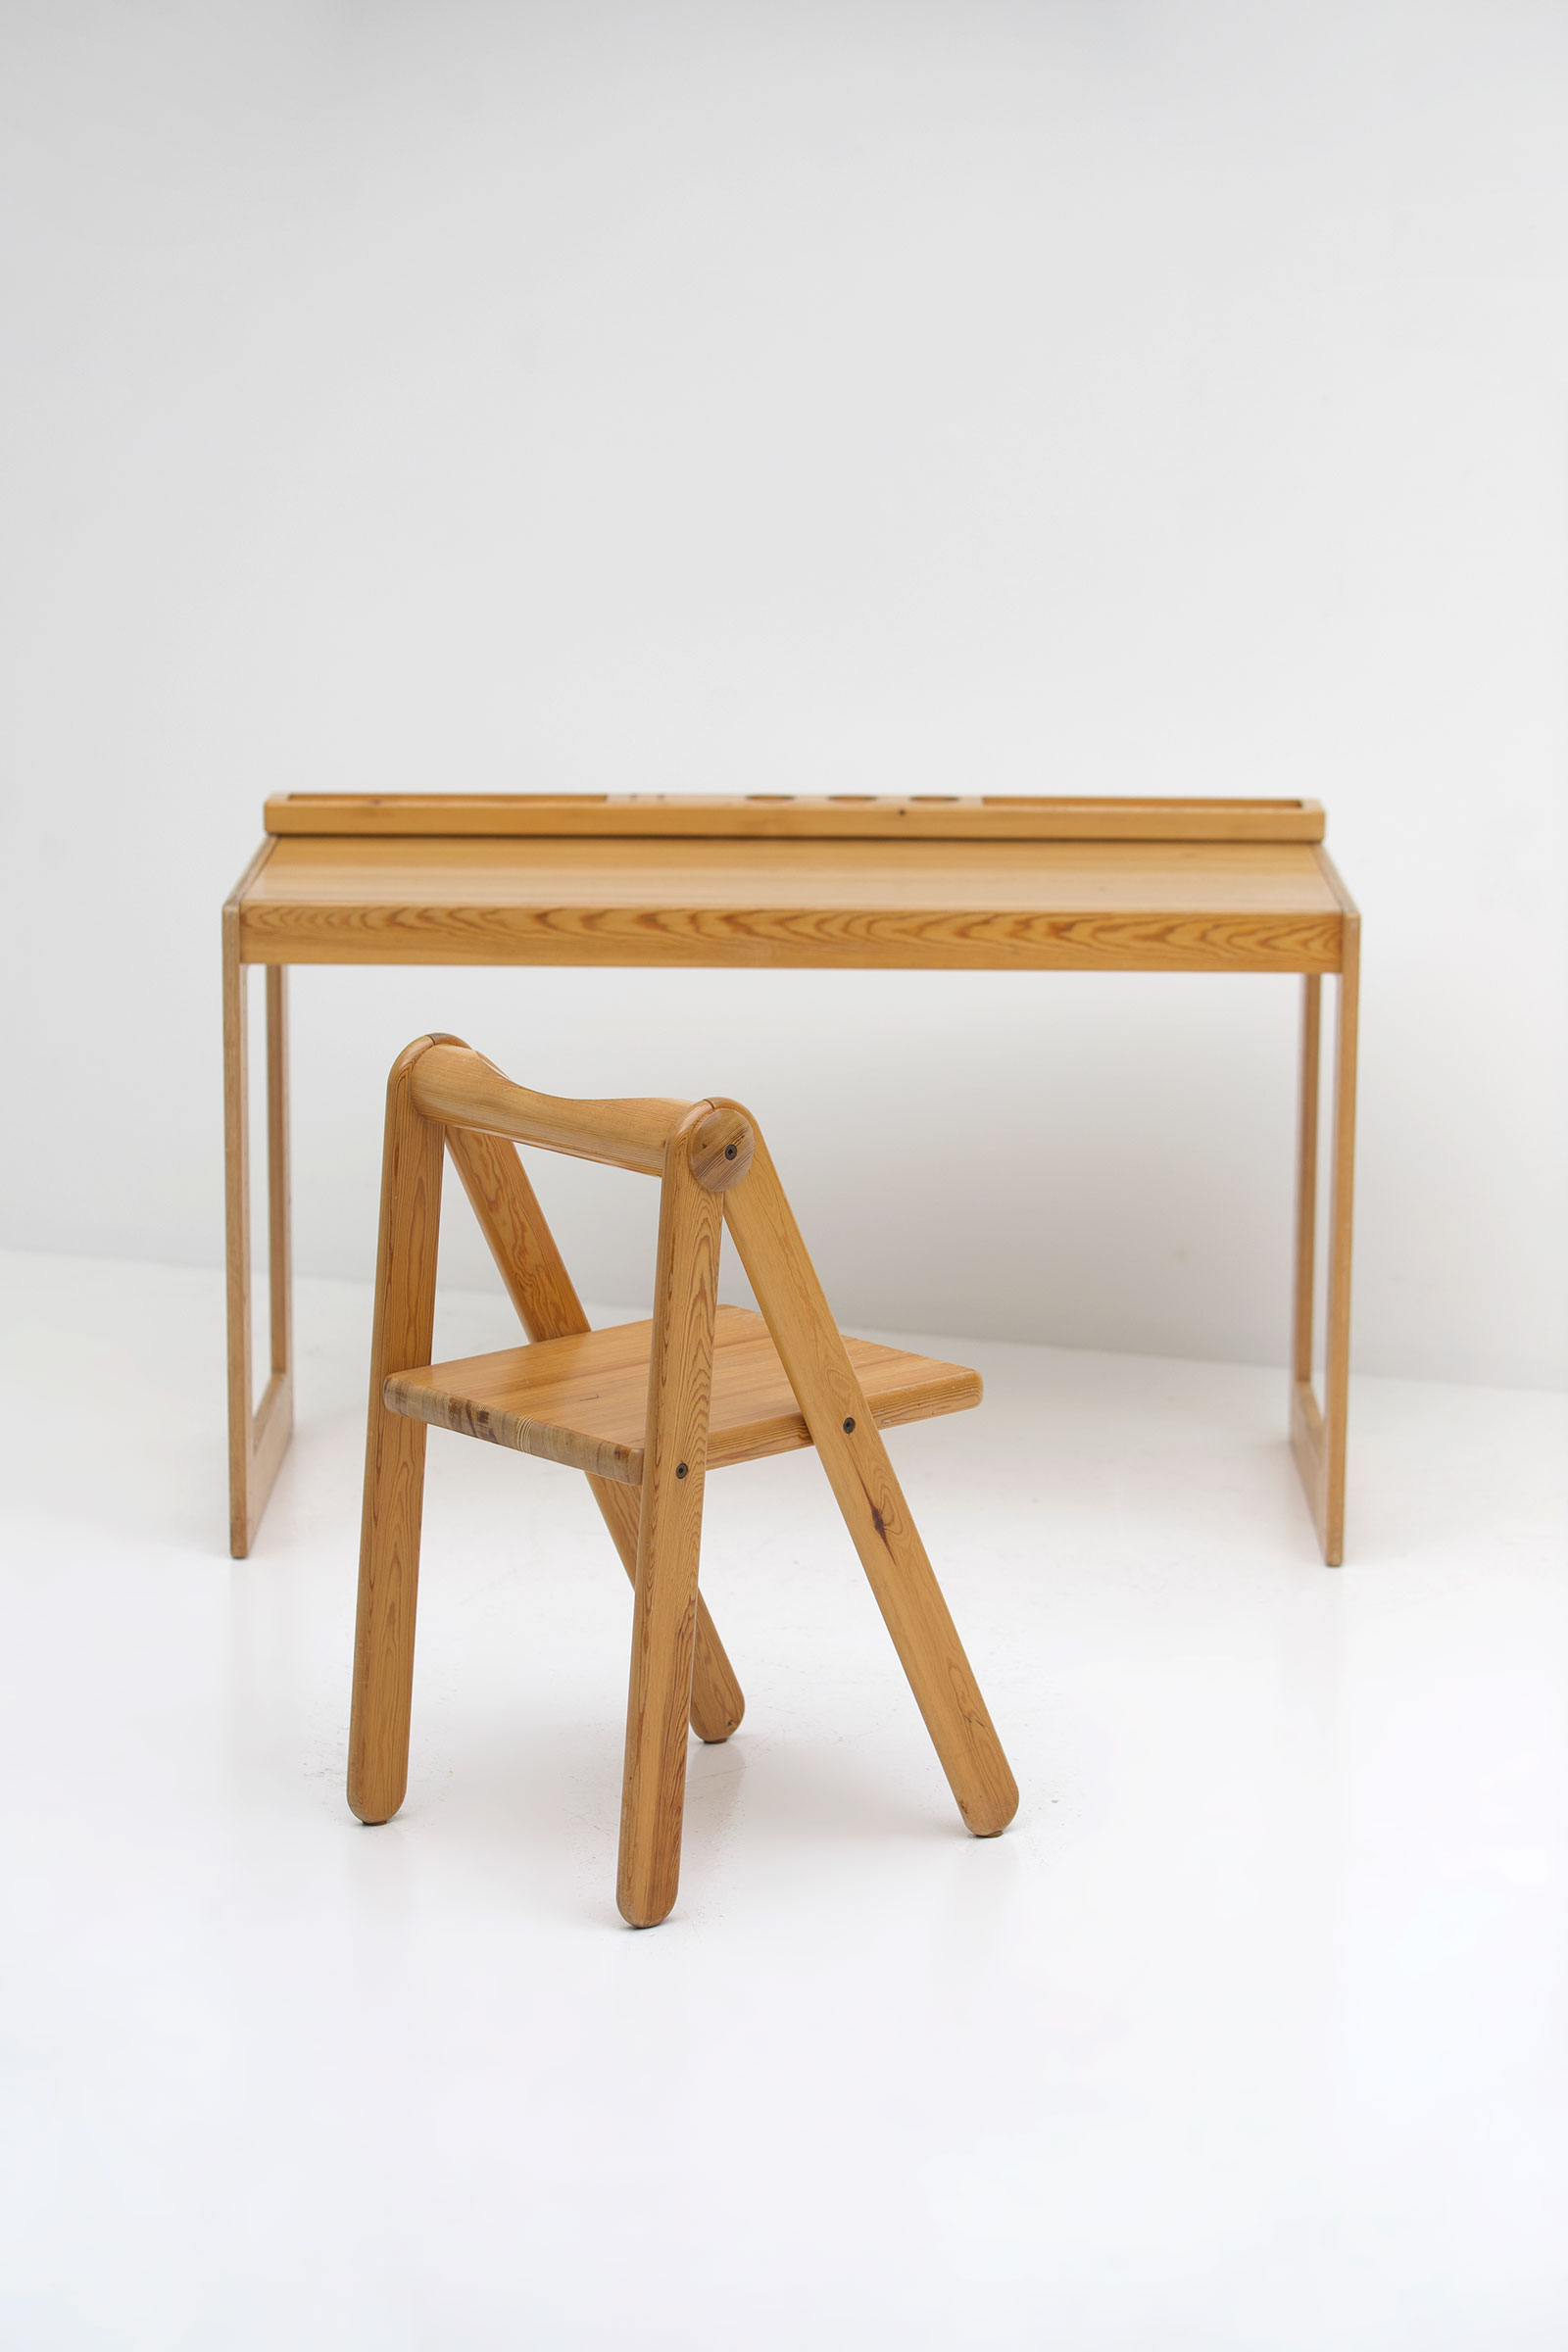 Childrens desk furniture by Pierre Grosjean setimage 19